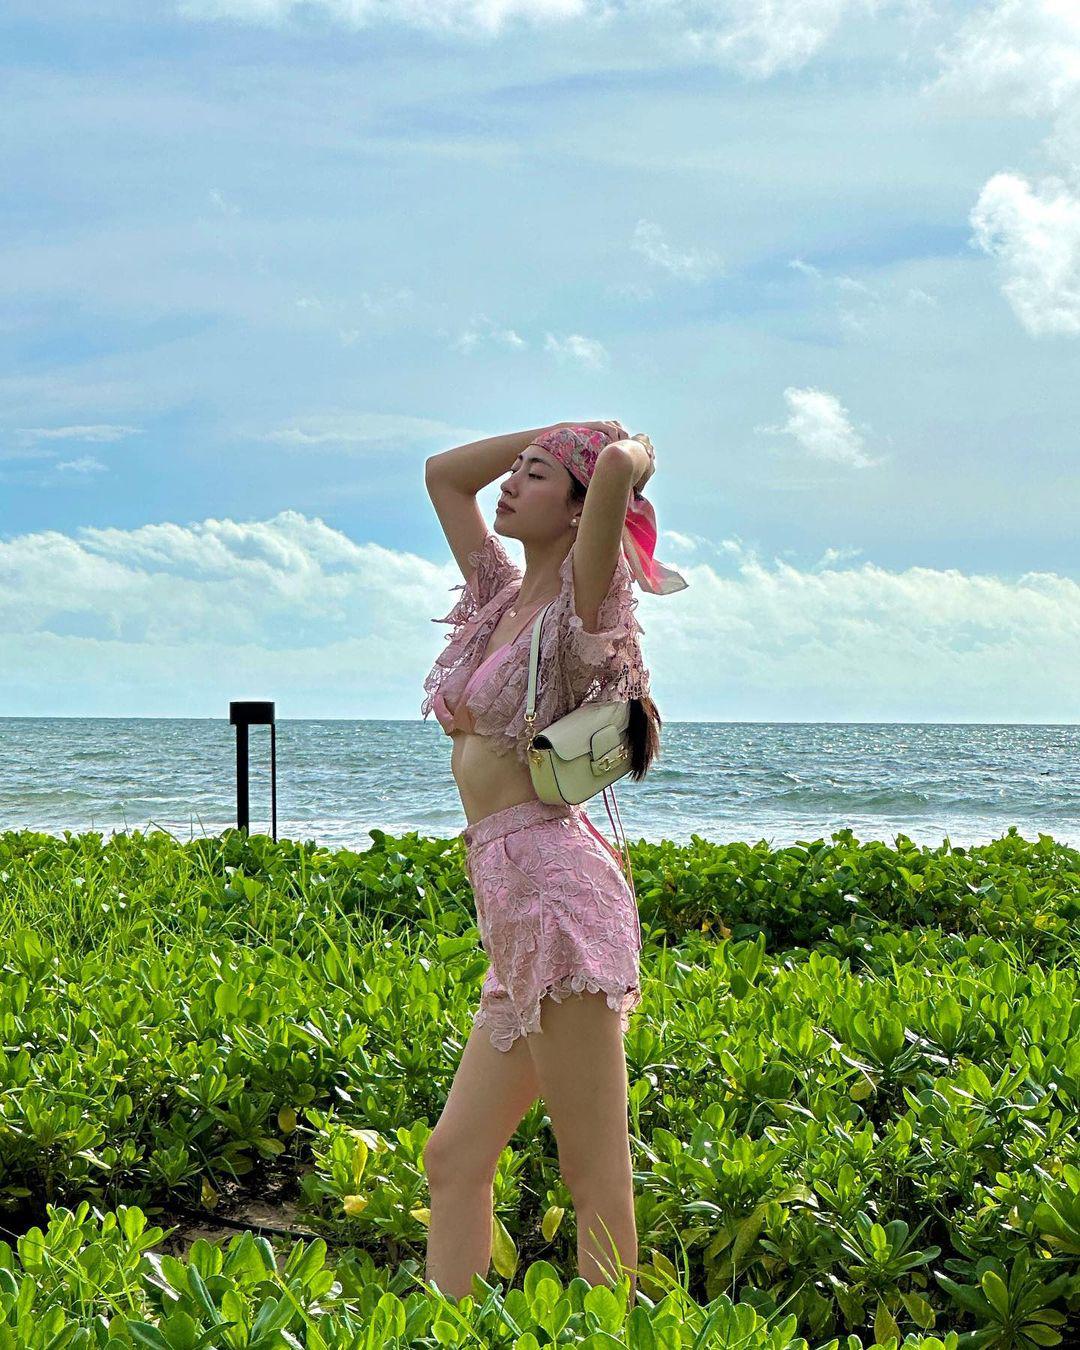 "Hoa hậu Cao Bằng có cơ thể đẹp nhất lịch sử" khéo mặc thongkini khoe chiều cao 1m80 - 7